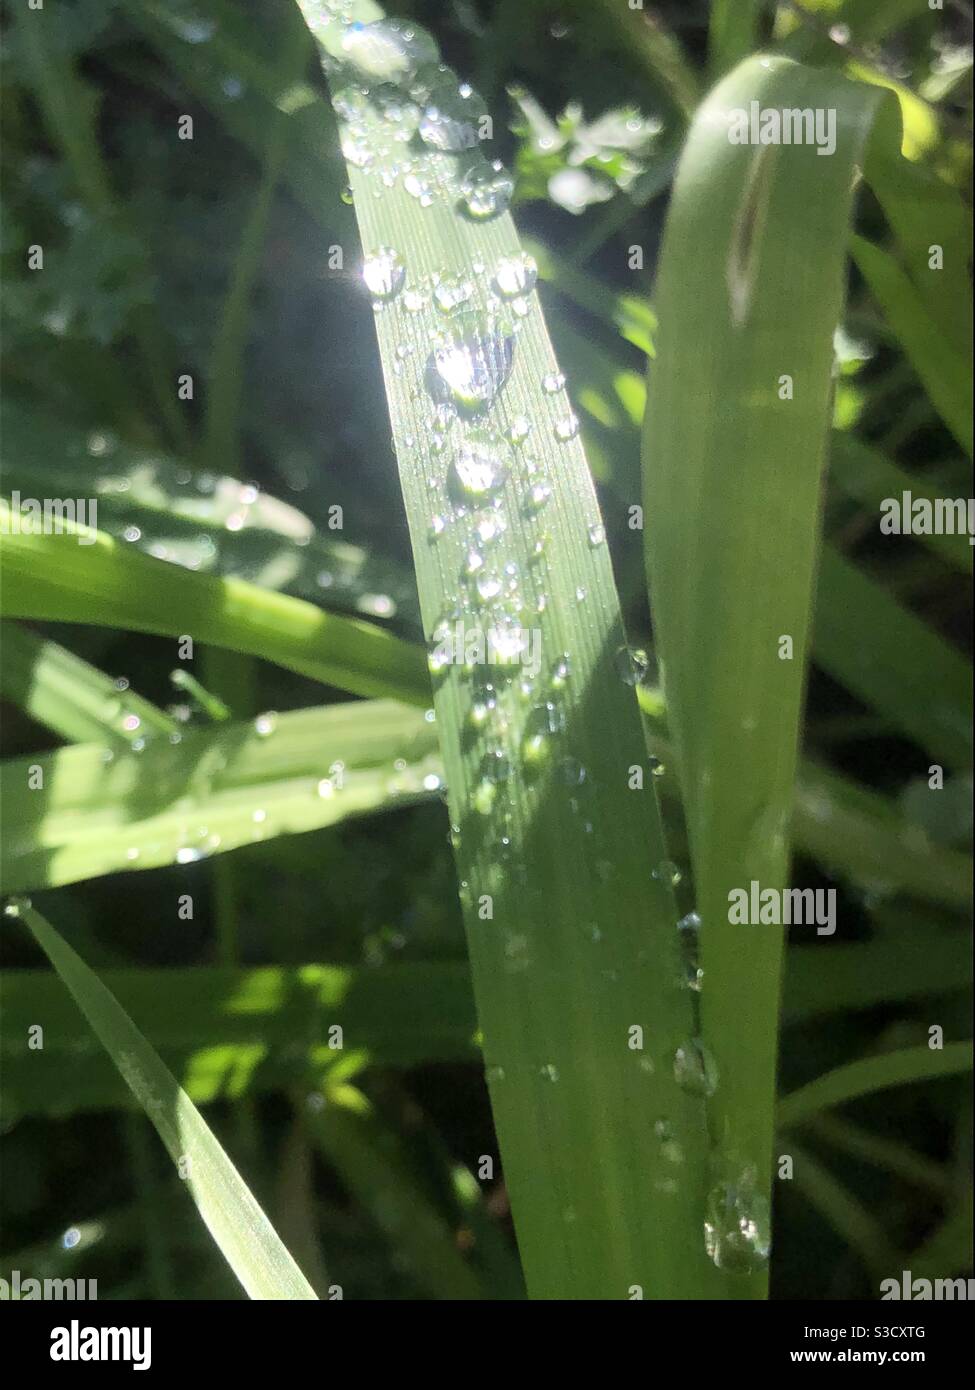 Sonne scheint durch die Kugeln des Regens auf Grashalmen während einer Pause in den Sturmwolken. Stockfoto